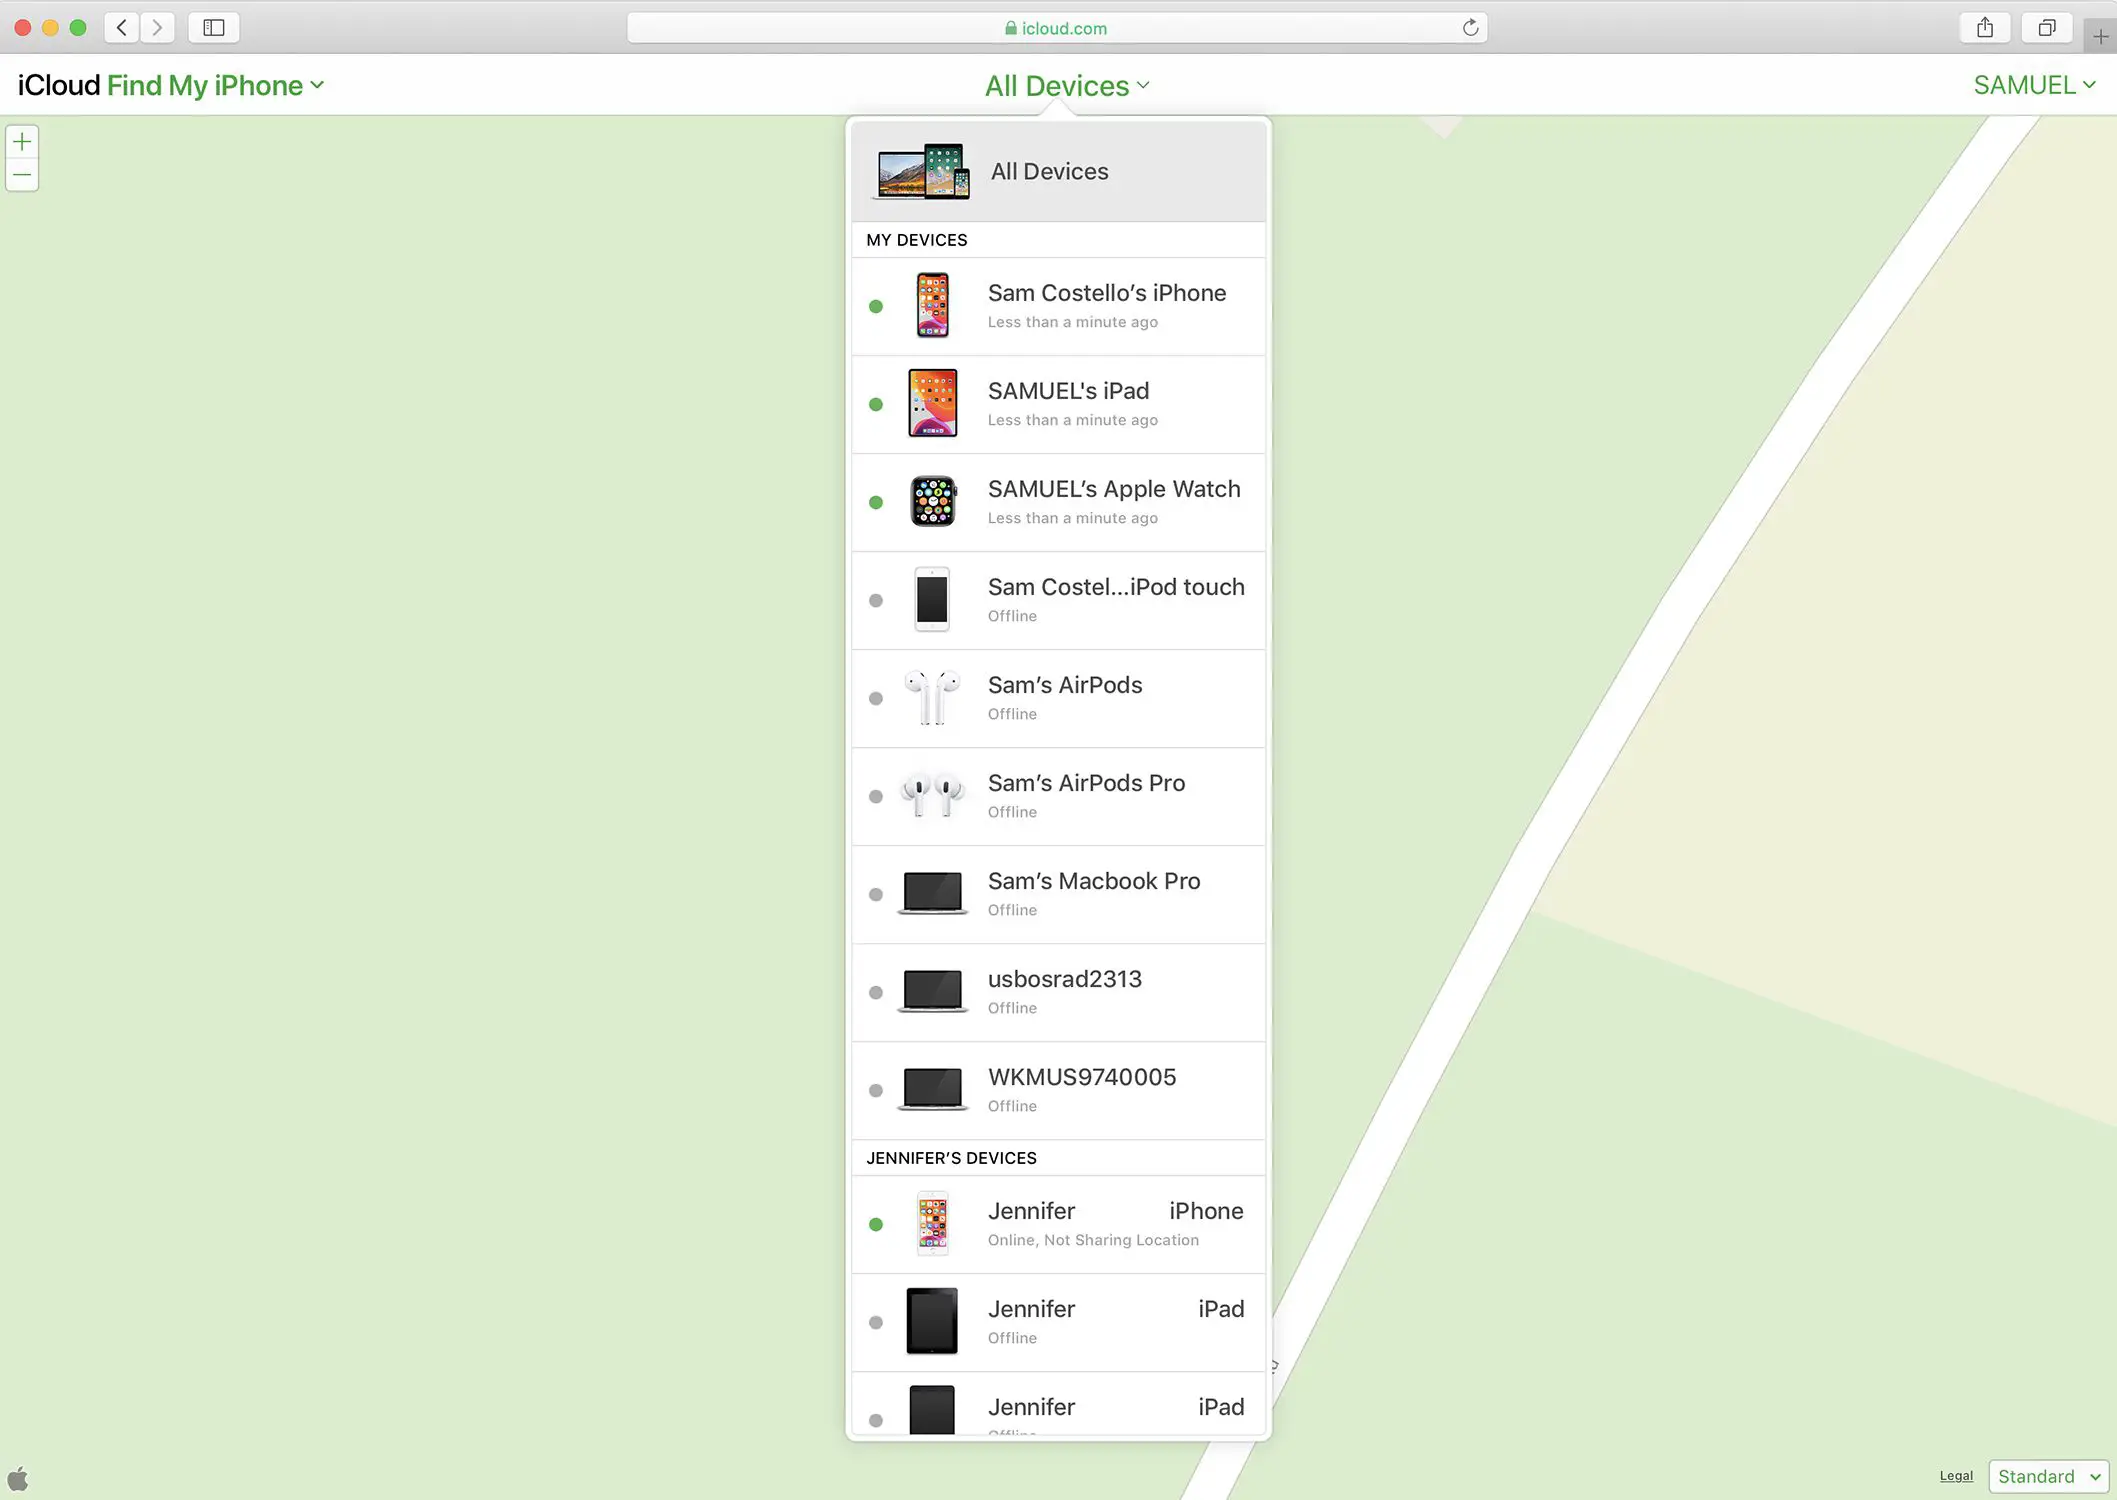 Captura de tela do Find My iPhone no iCloud